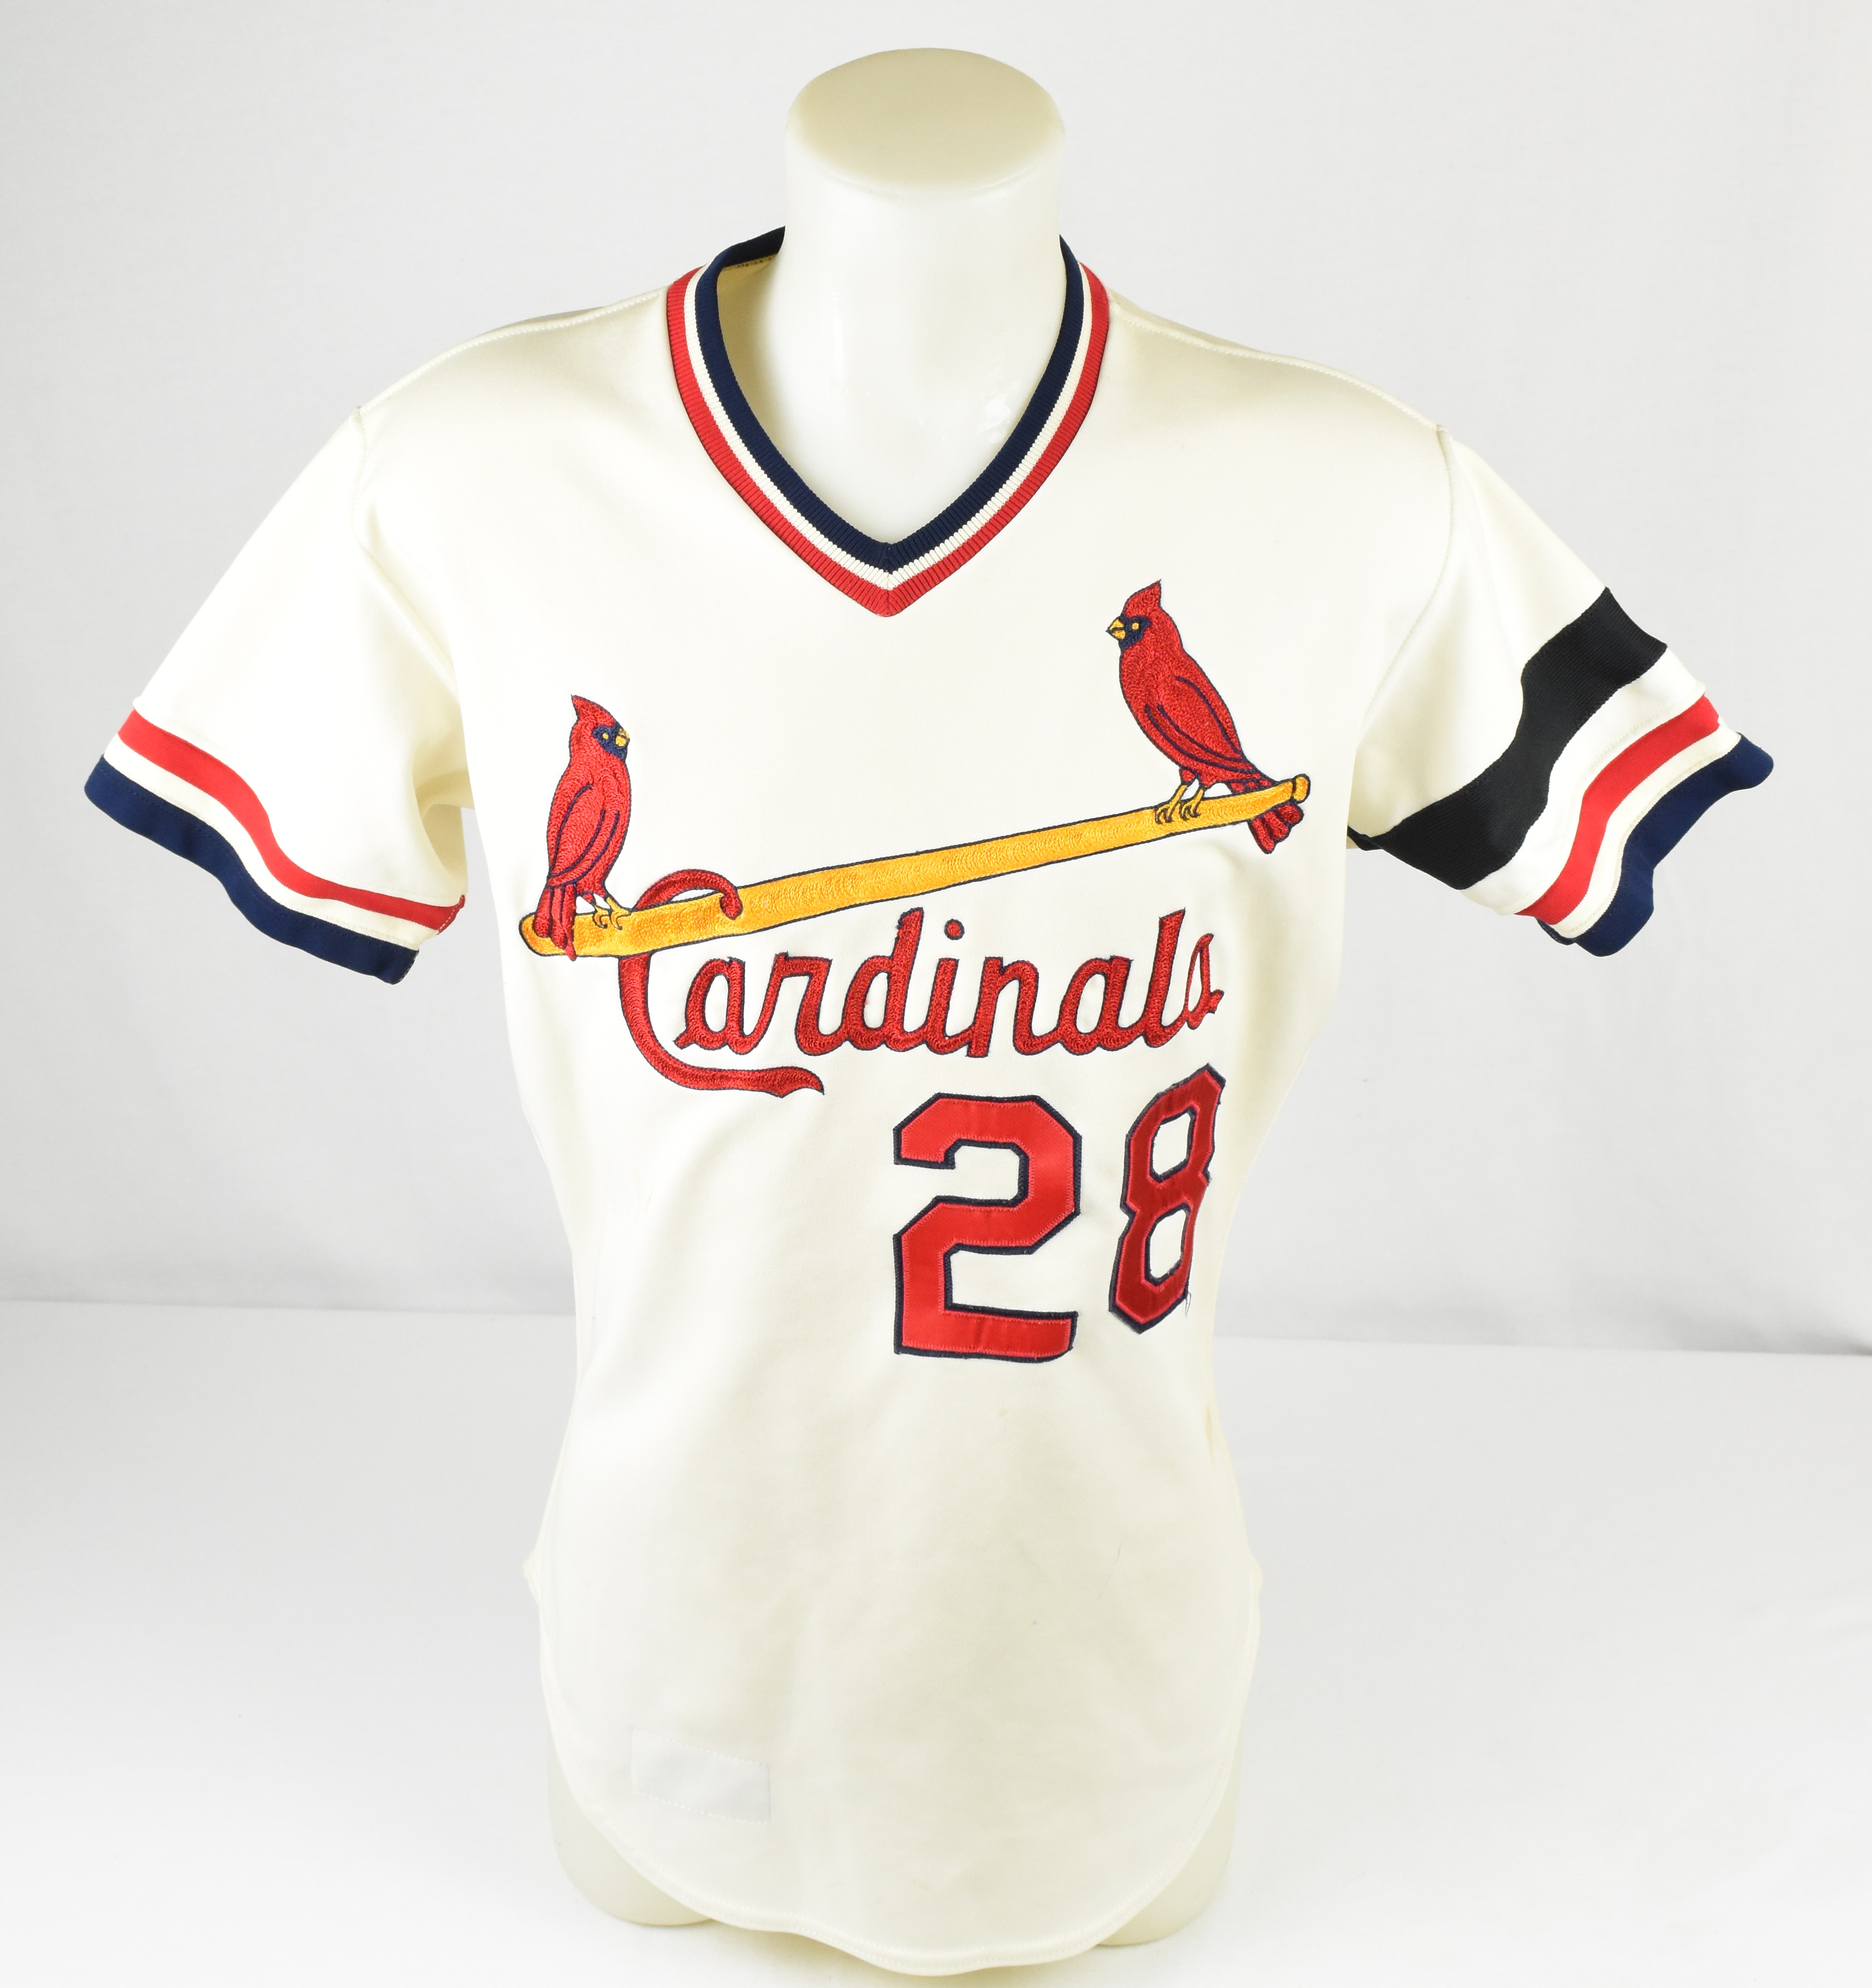 1982 cardinals jersey